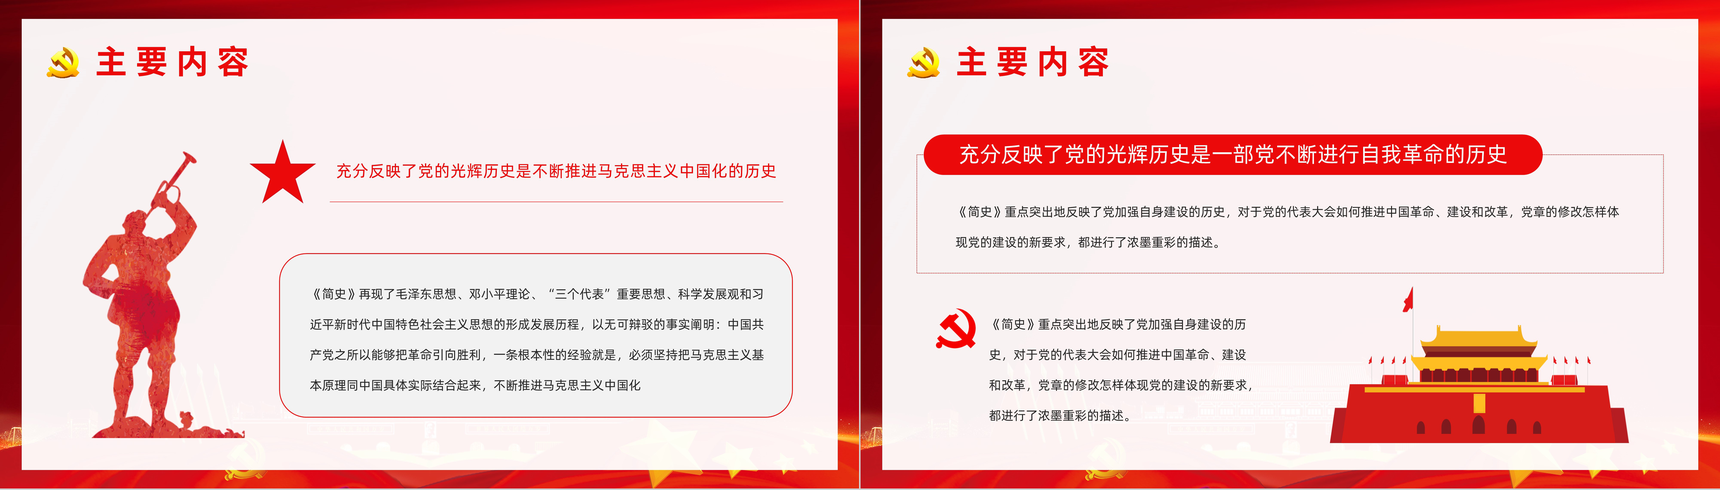 《中国共产党简史》学习基层党政党员学党史悟思想教育专题讲座PPT模板-7